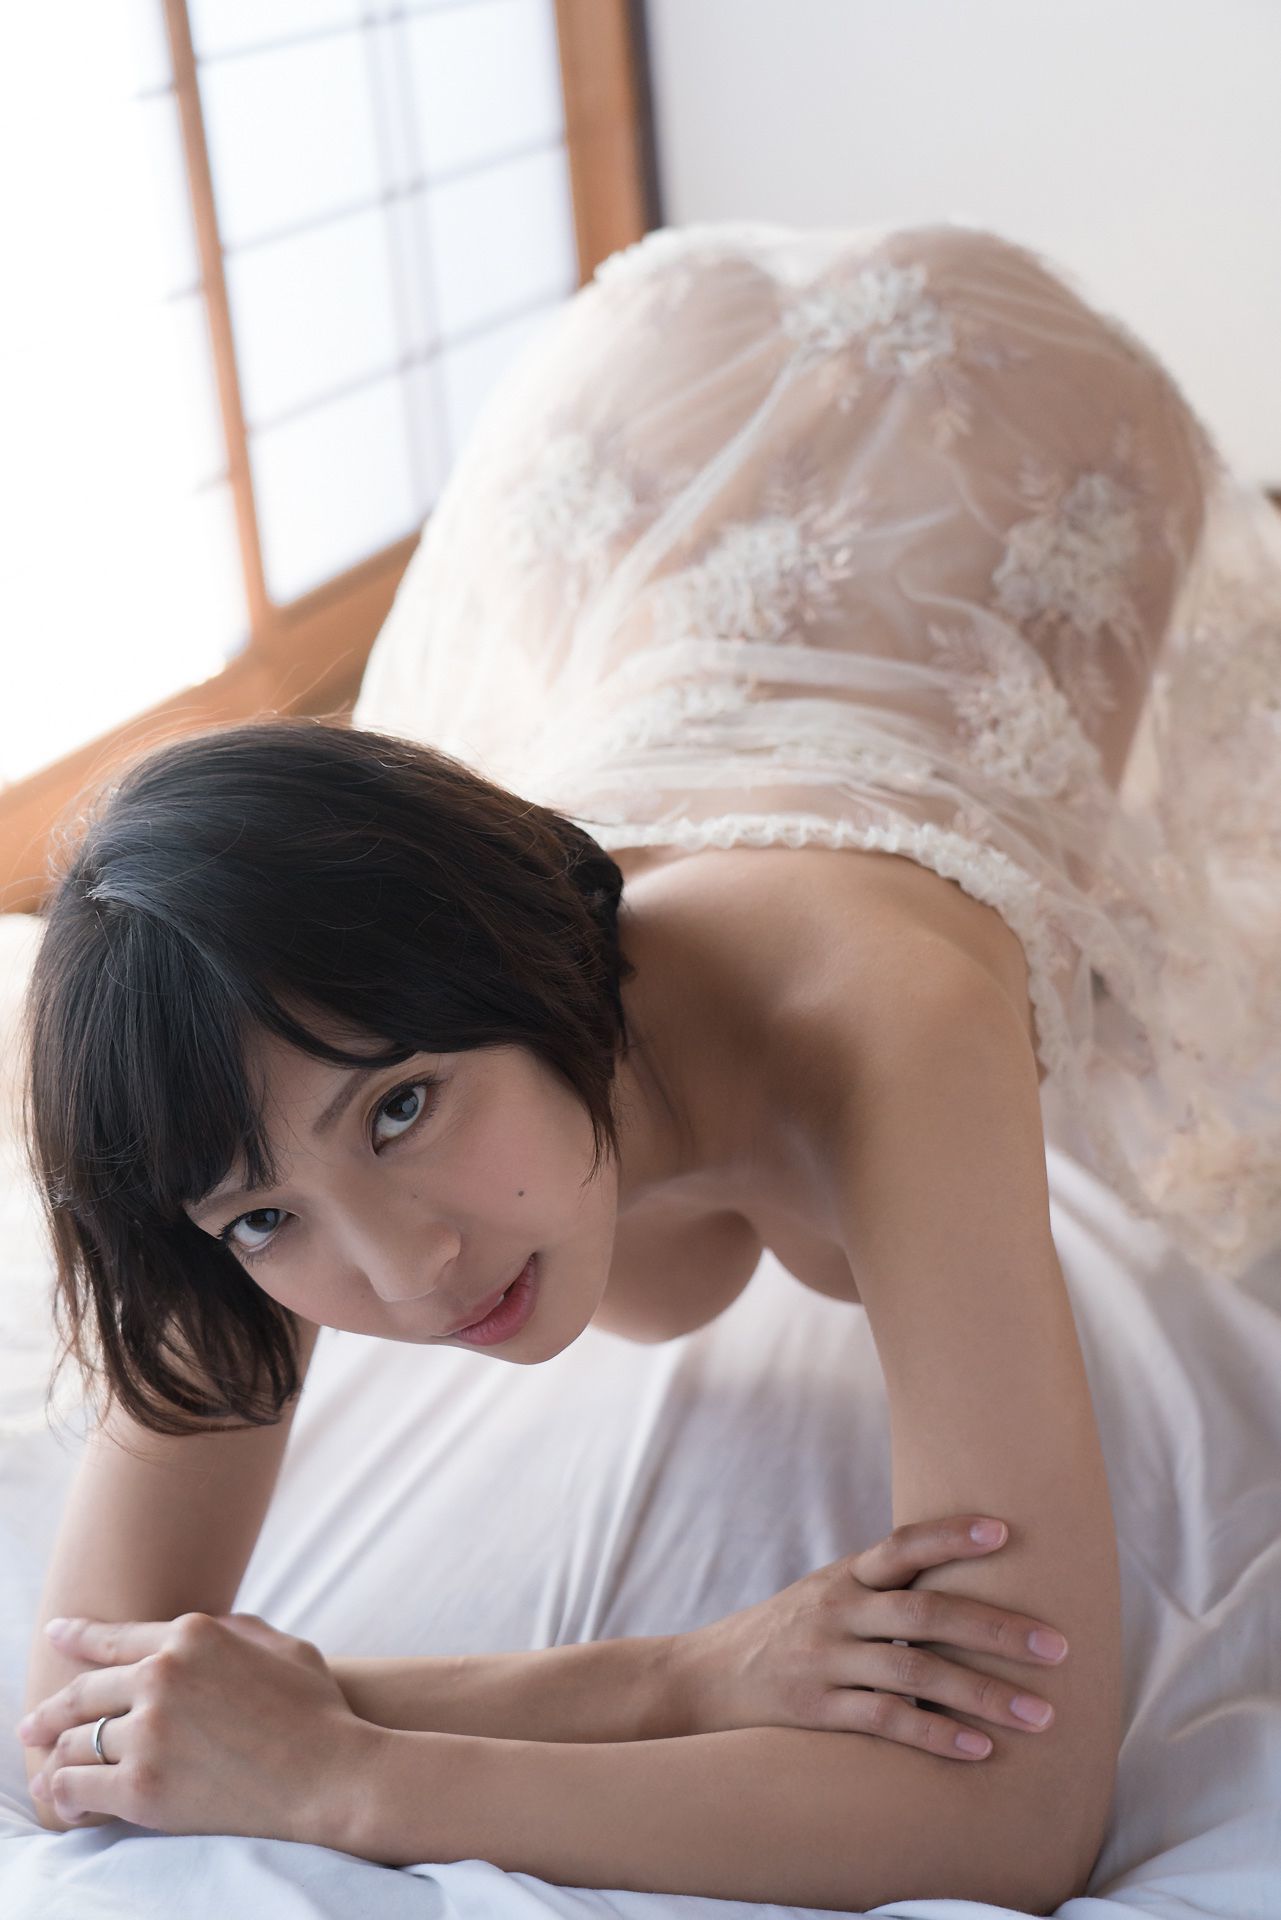 [Minisuka.tv] 麻倉まりな Marina Asakura - 蕾丝人体诱惑巨乳-第21张美女图片